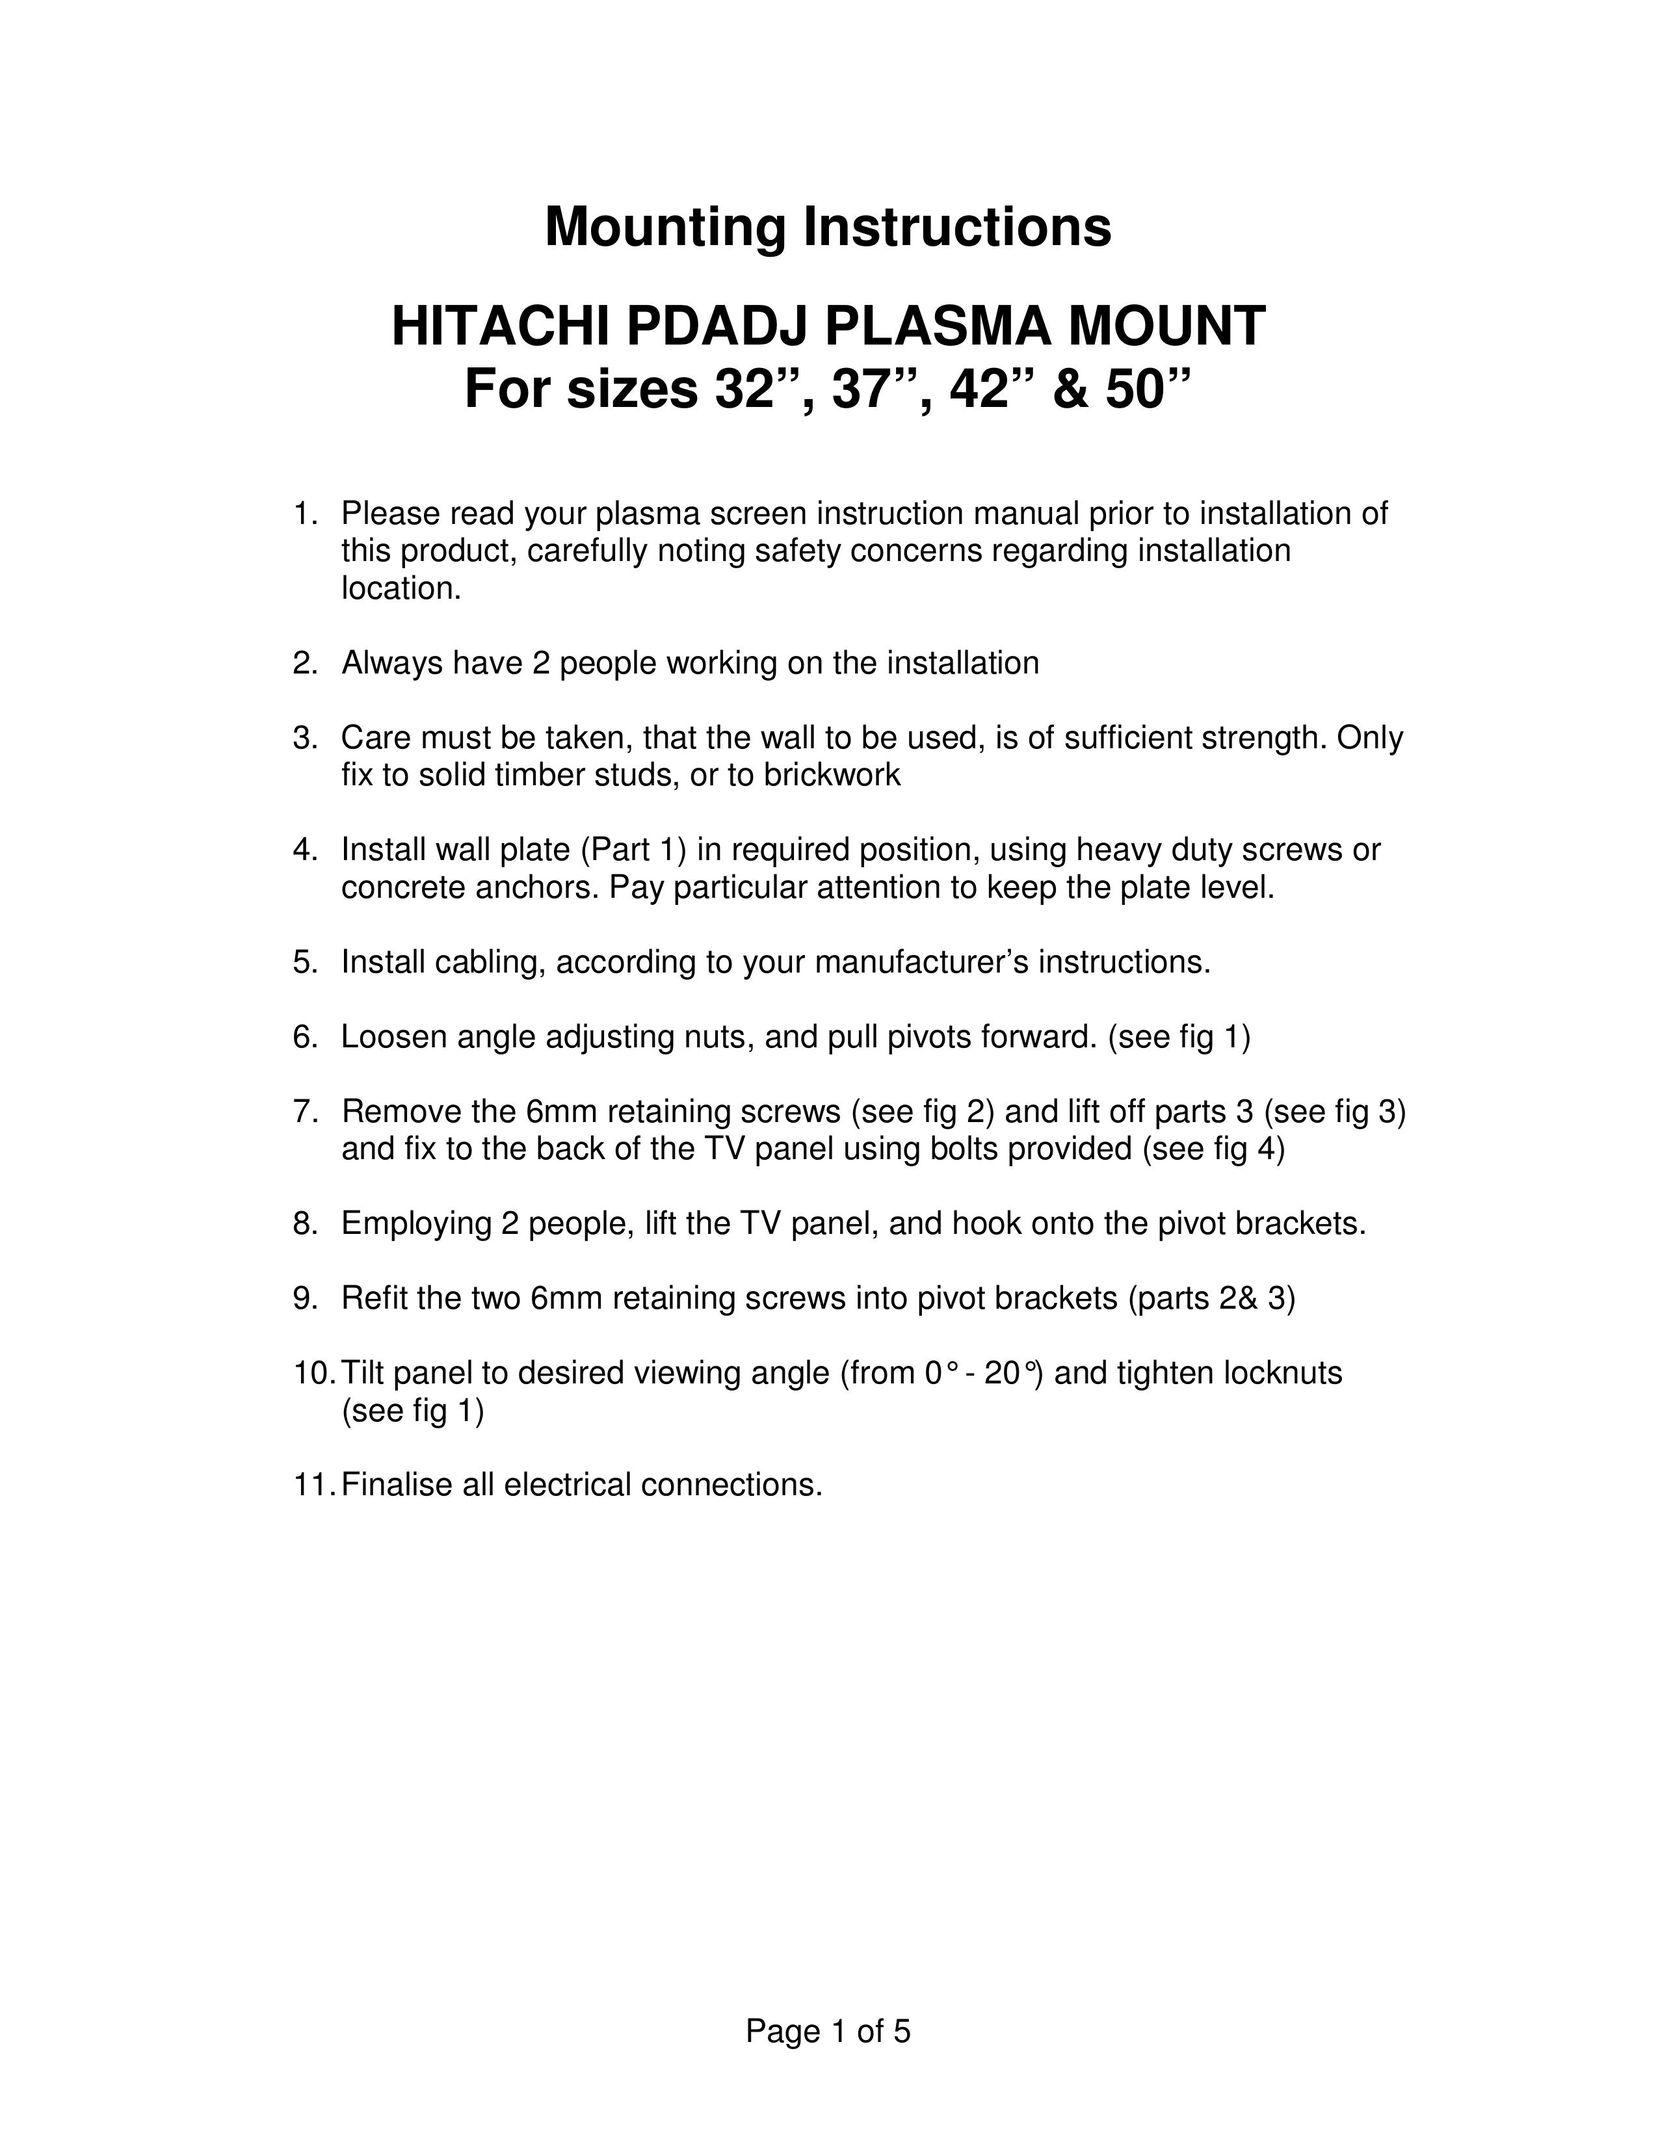 Hitachi hitachi pdadj plasma mount TV Mount User Manual